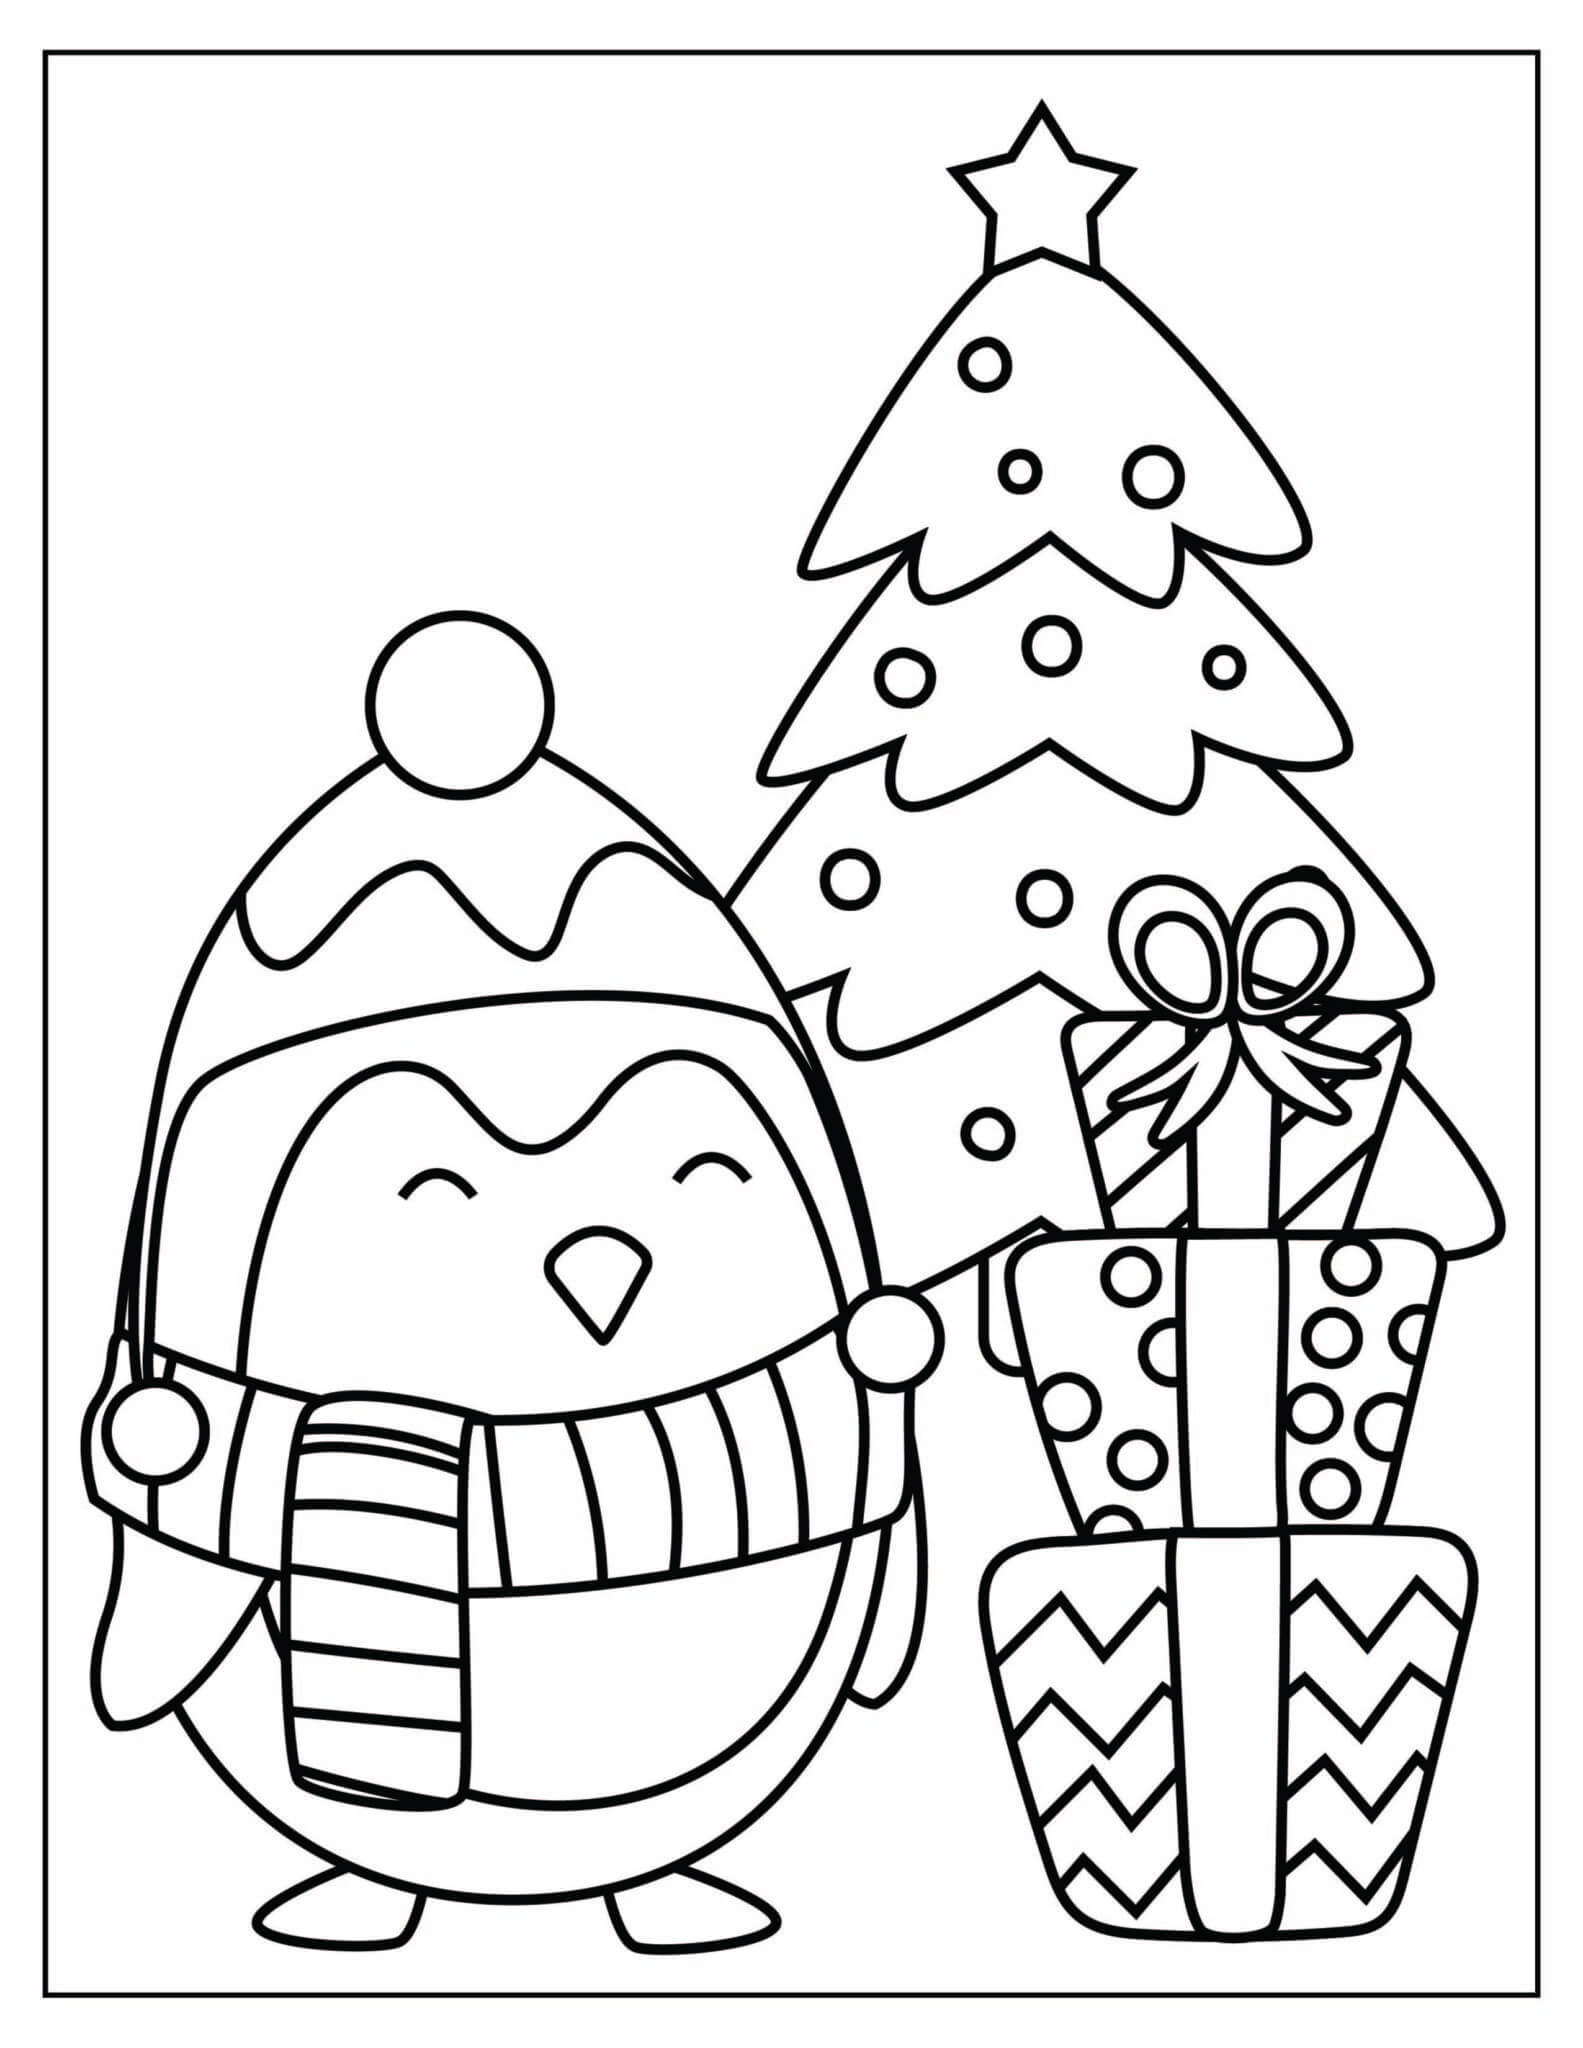 Pinguim e árvore de Natal com Caixas de Presente para colorir